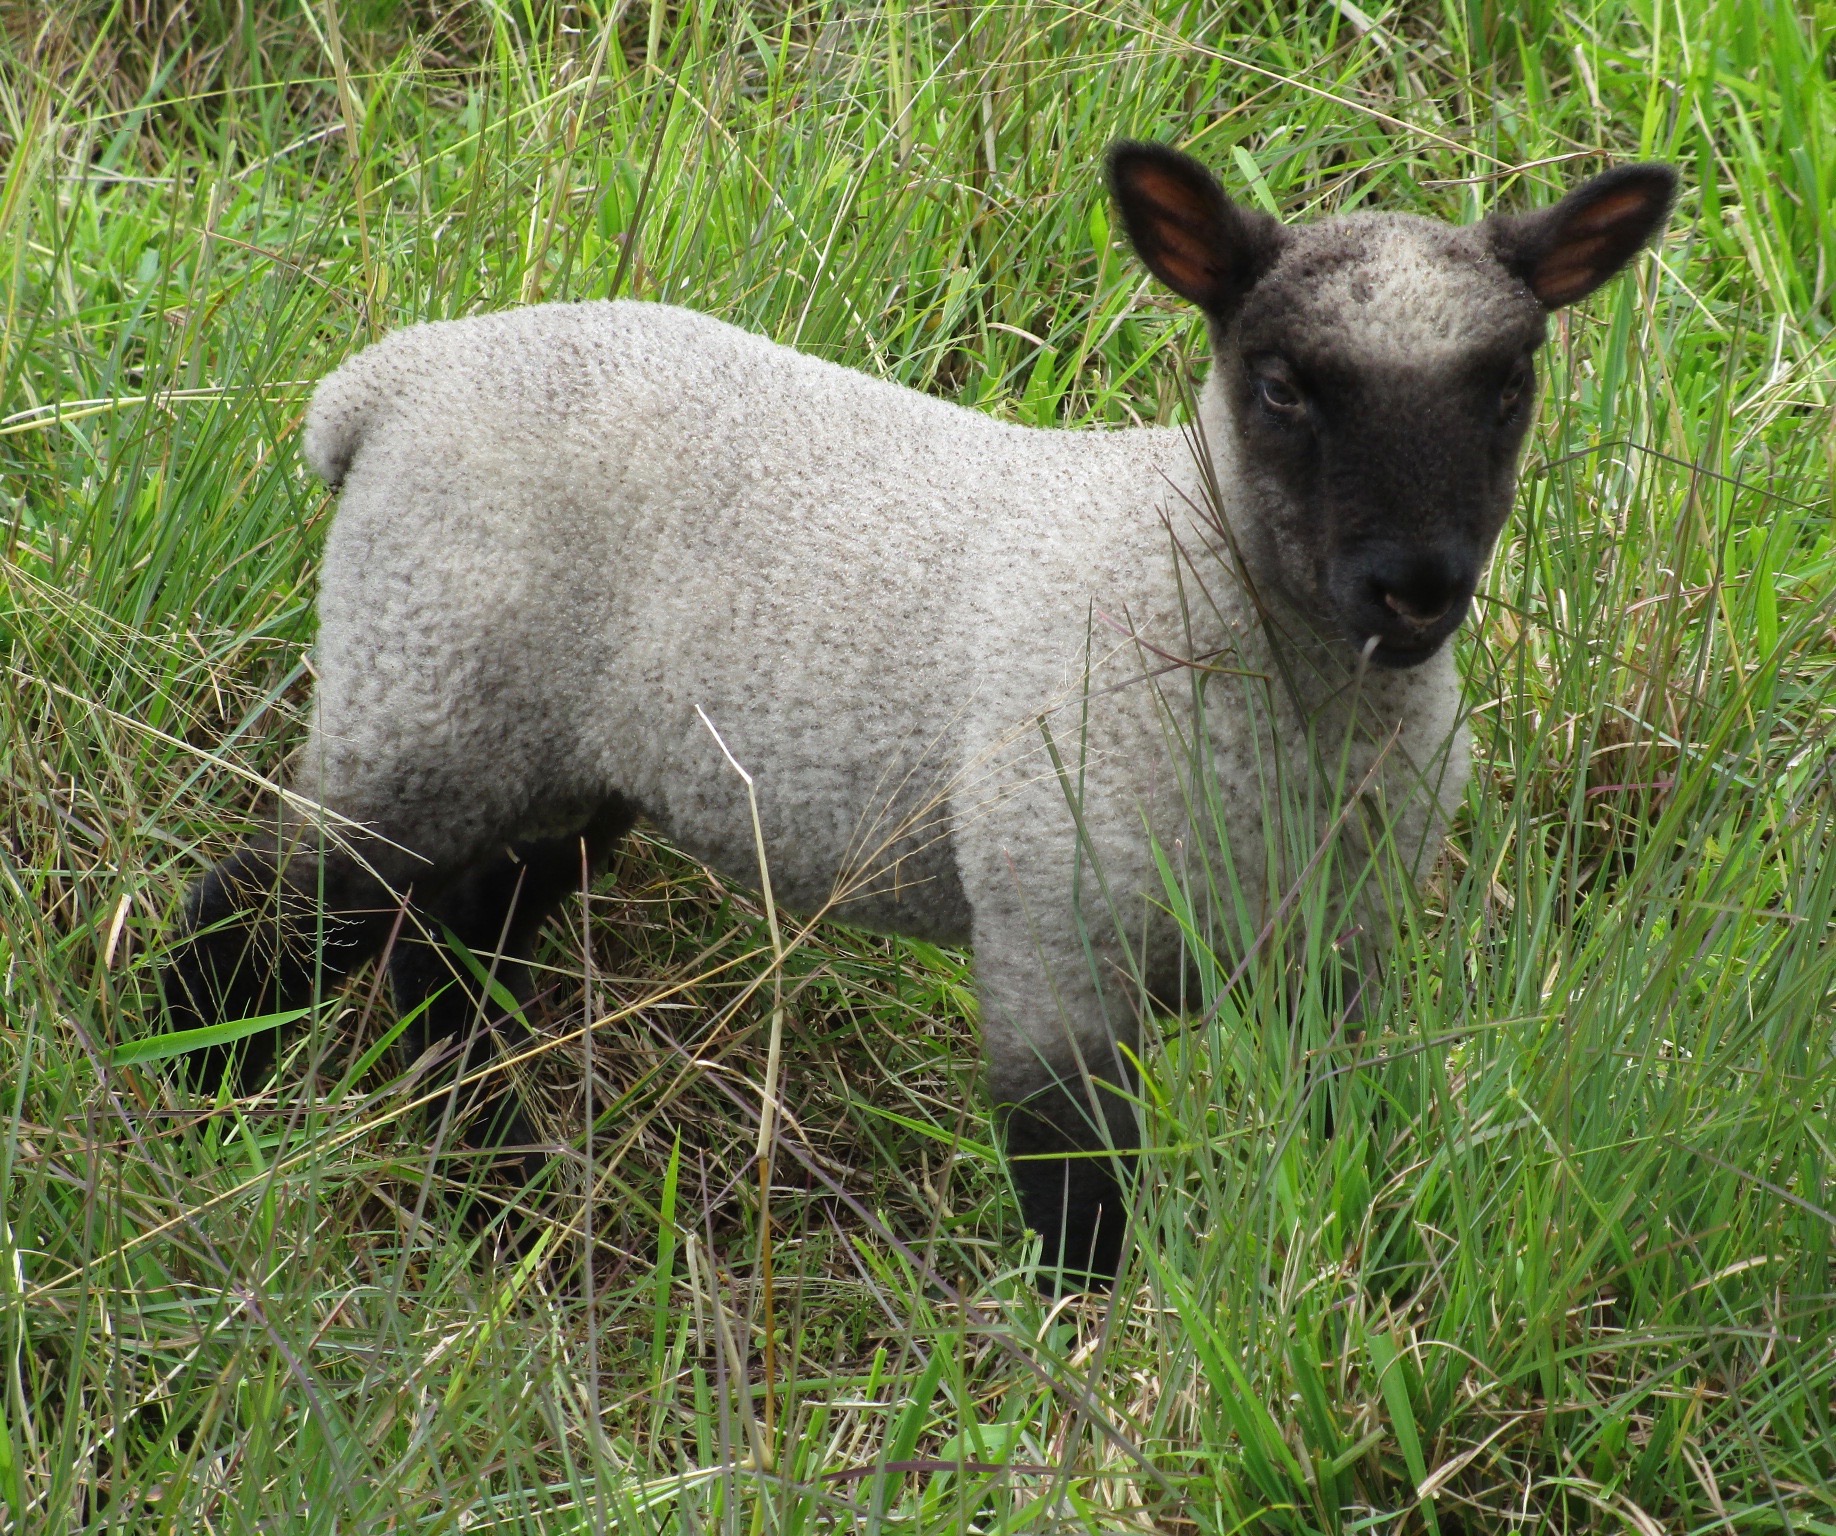 Ram lamb at 4 weeks old